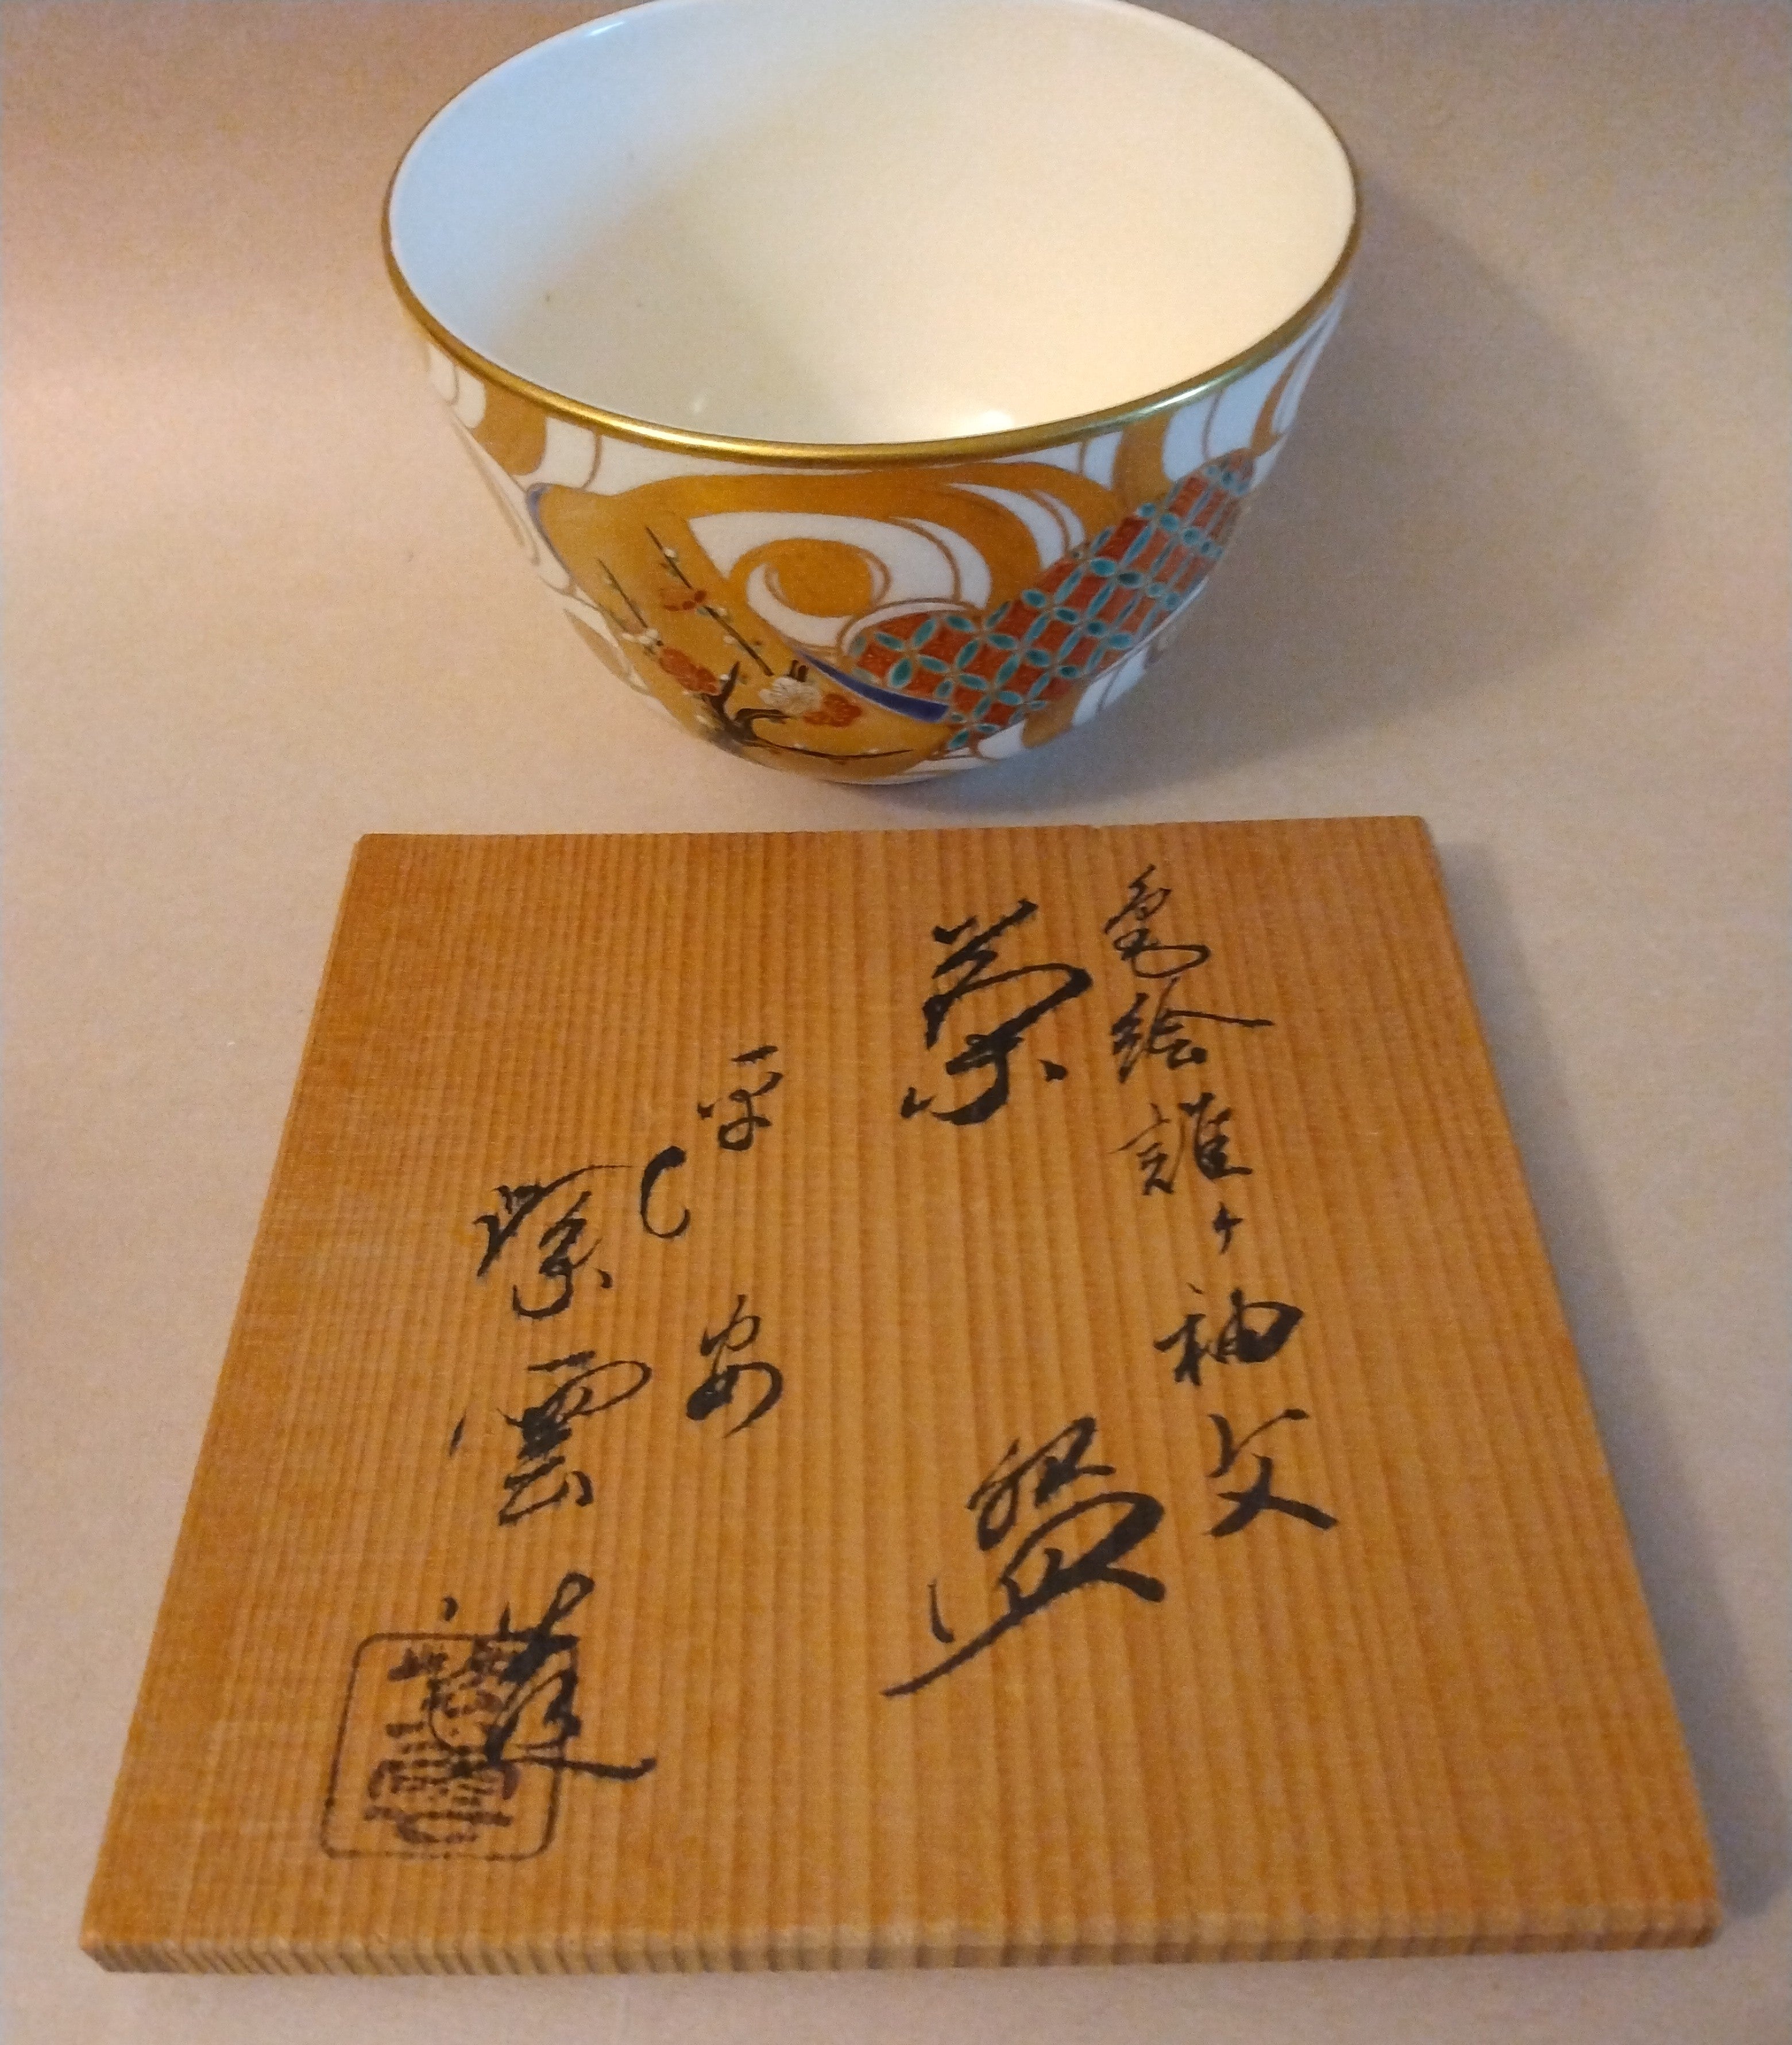 Kiyomizu-yaki Matcha Chawan, Tea Bowl, by Hashimoto Shiun, Kyoto